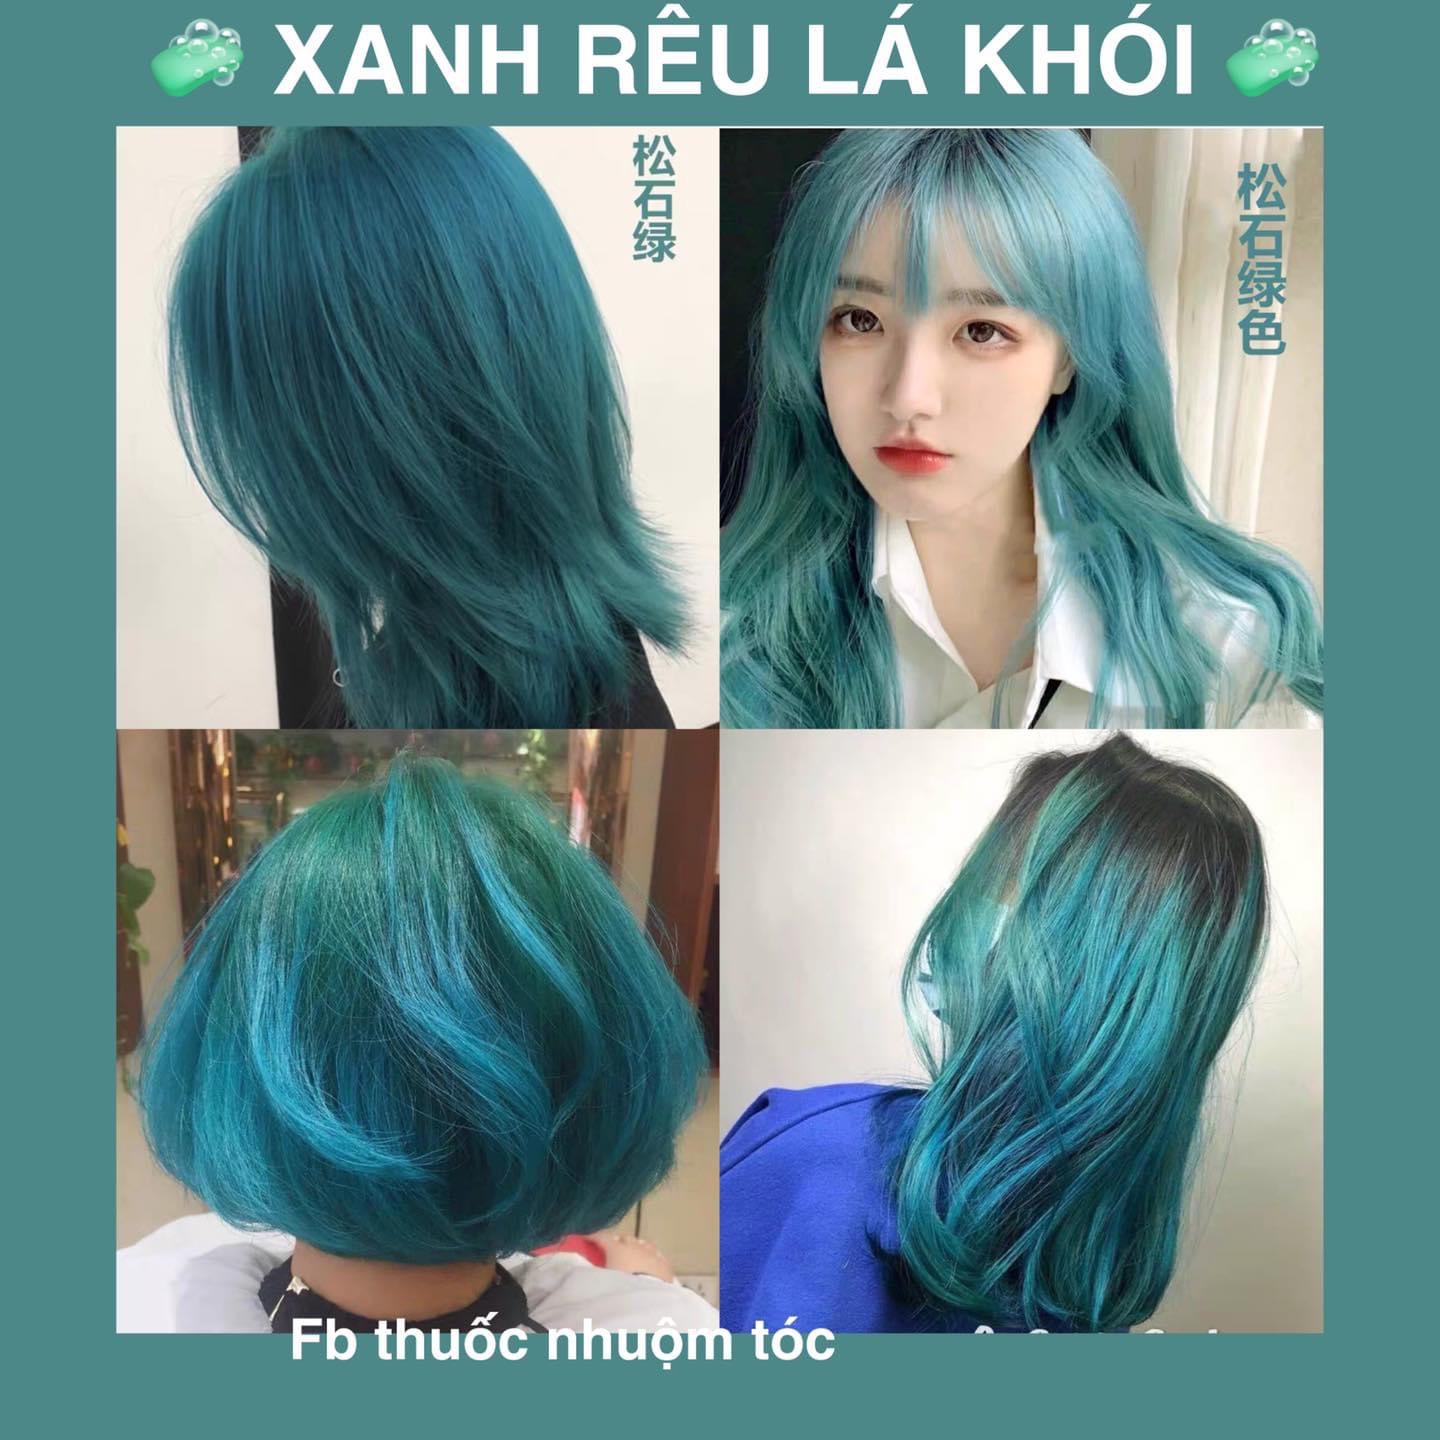 Tóc màu xanh rêu khói là sự kết hợp tuyệt vời giữa màu sắc và sáng tạo. Để thấy những kiểu tóc đẹp và thú vị liên quan đến màu sắc này, hãy truy cập vào hình ảnh được chia sẻ trên mạng xã hội.